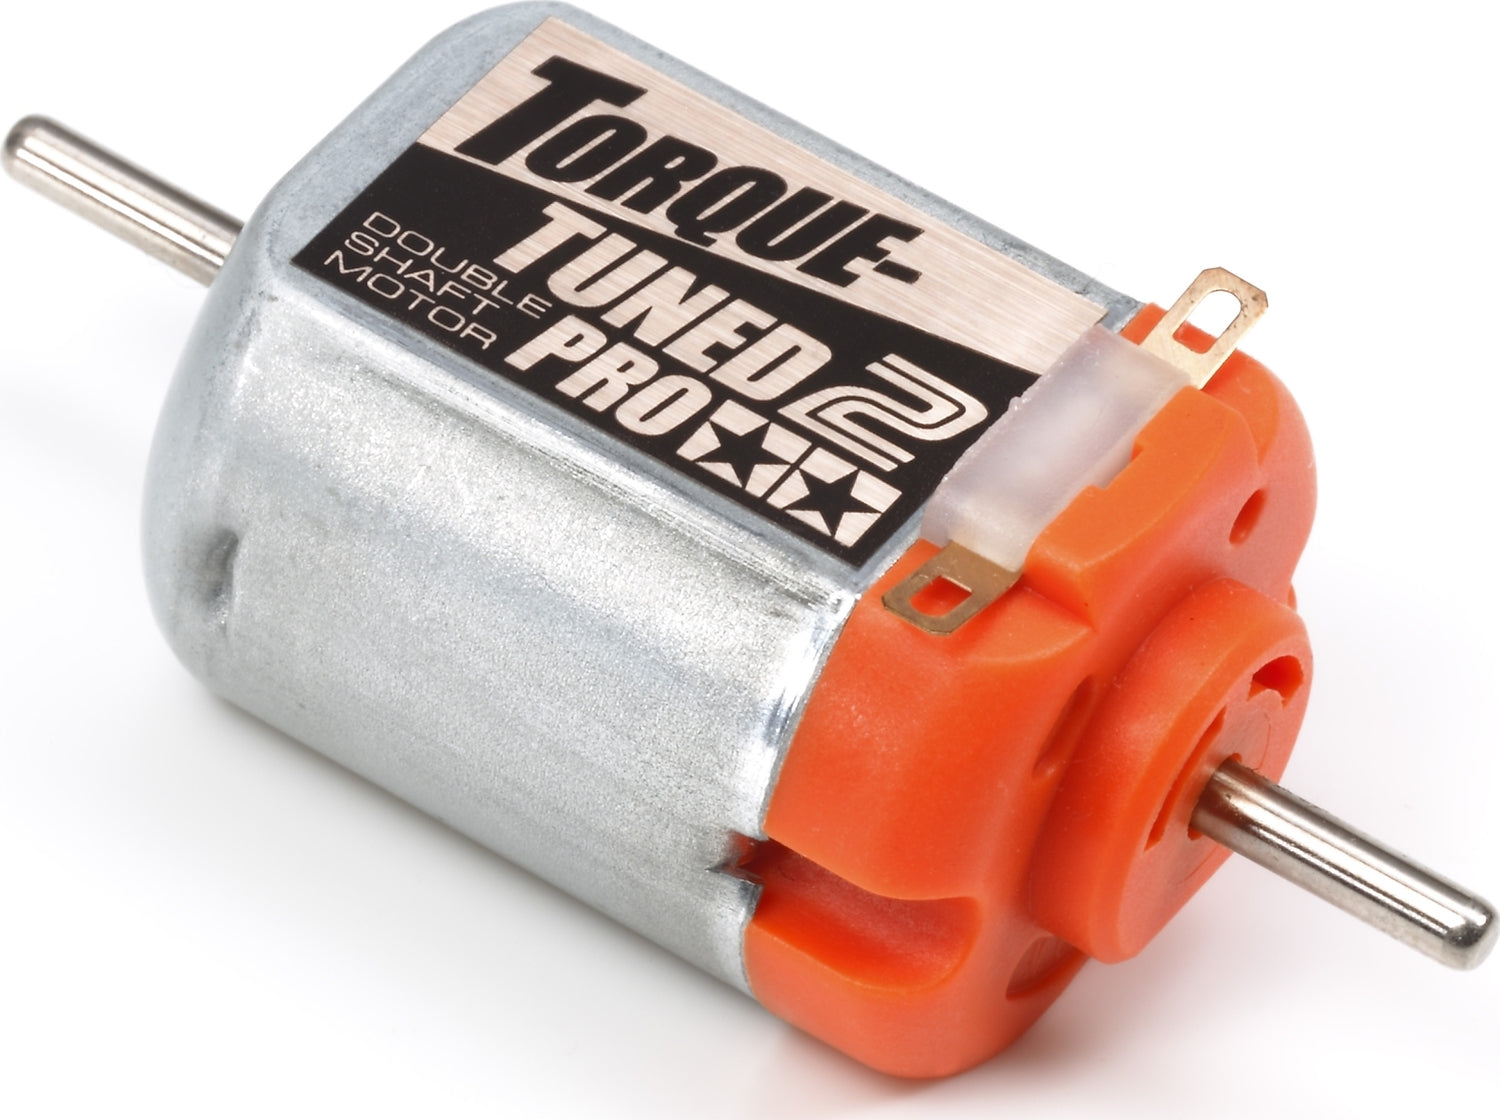 JR Torque-Tuned 2 Motor PRO